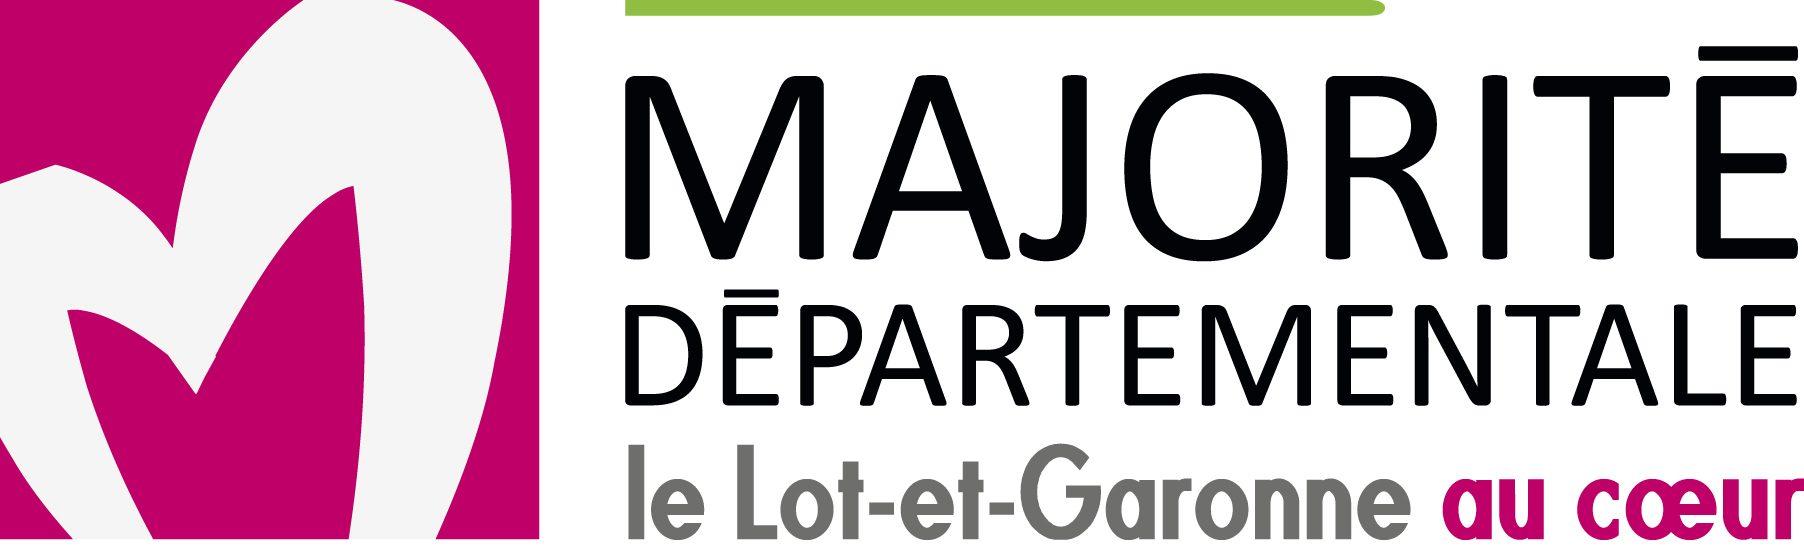 Majorité départementale de Lot-et-Garonne